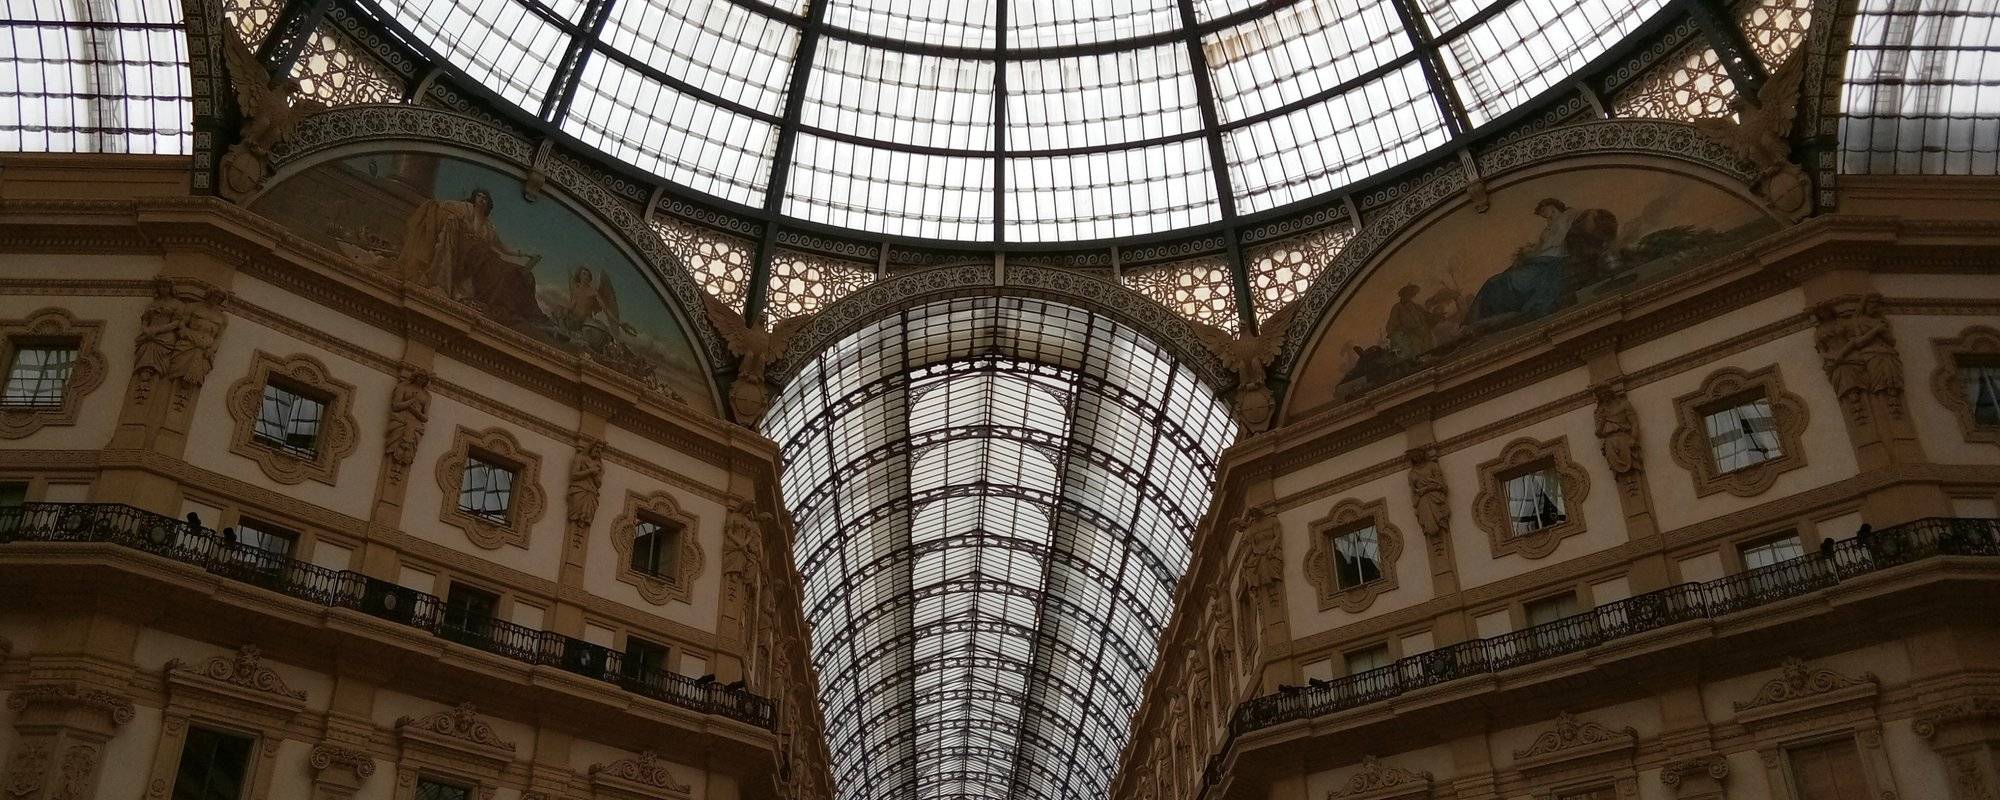 Galleria Vittorio Emanuele II - Exploring Milan #2